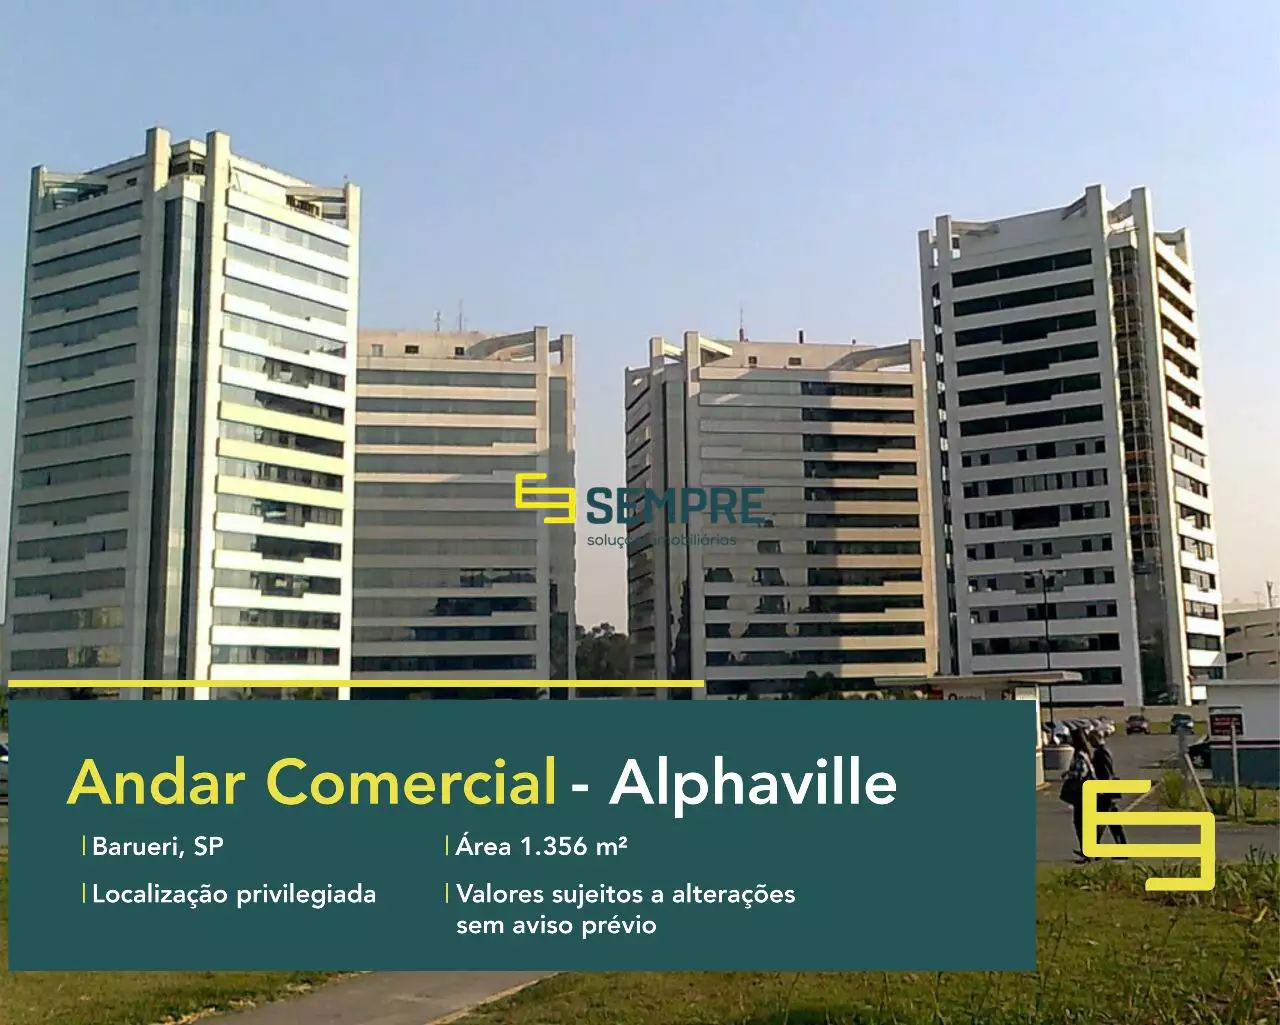 Laje corporativa em Barueri para alugar - Edifício C.A Rio Negro, excelente localização. O ponto comercial conta com área de 1.356 m².